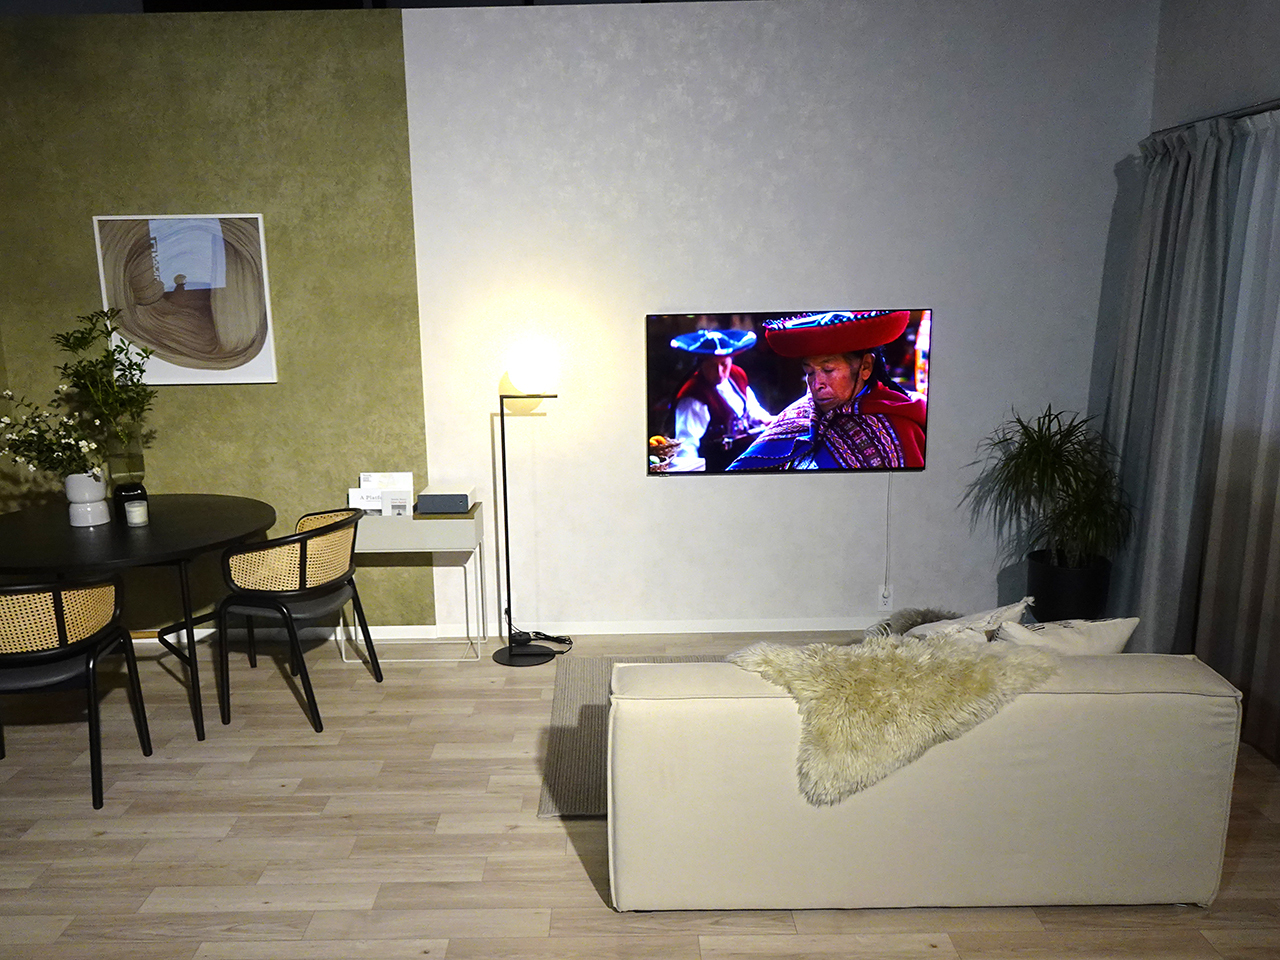 MAKO氏の自室を再現し、「ウォールフィットテレビ LW1」を取り付けたという空間